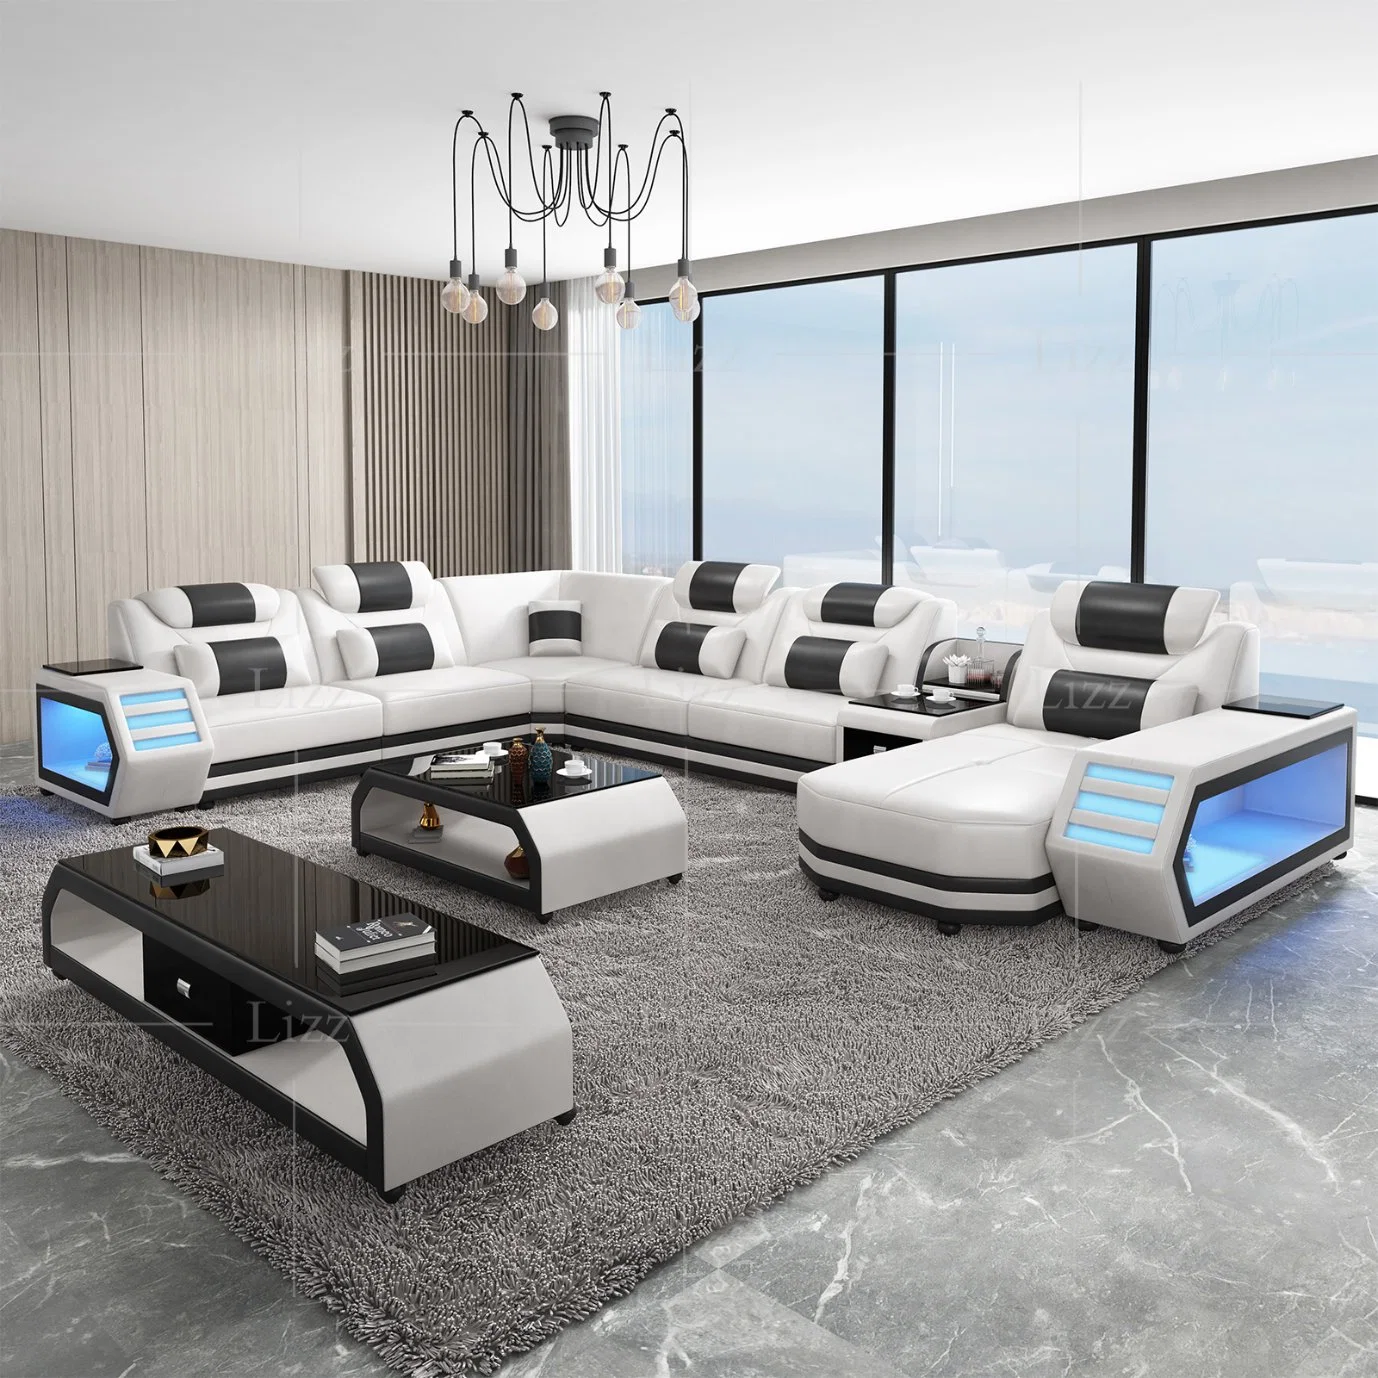 Функциональная LED современный европейский дизайн для отдыхающих из натуральной кожи диван в разрезе